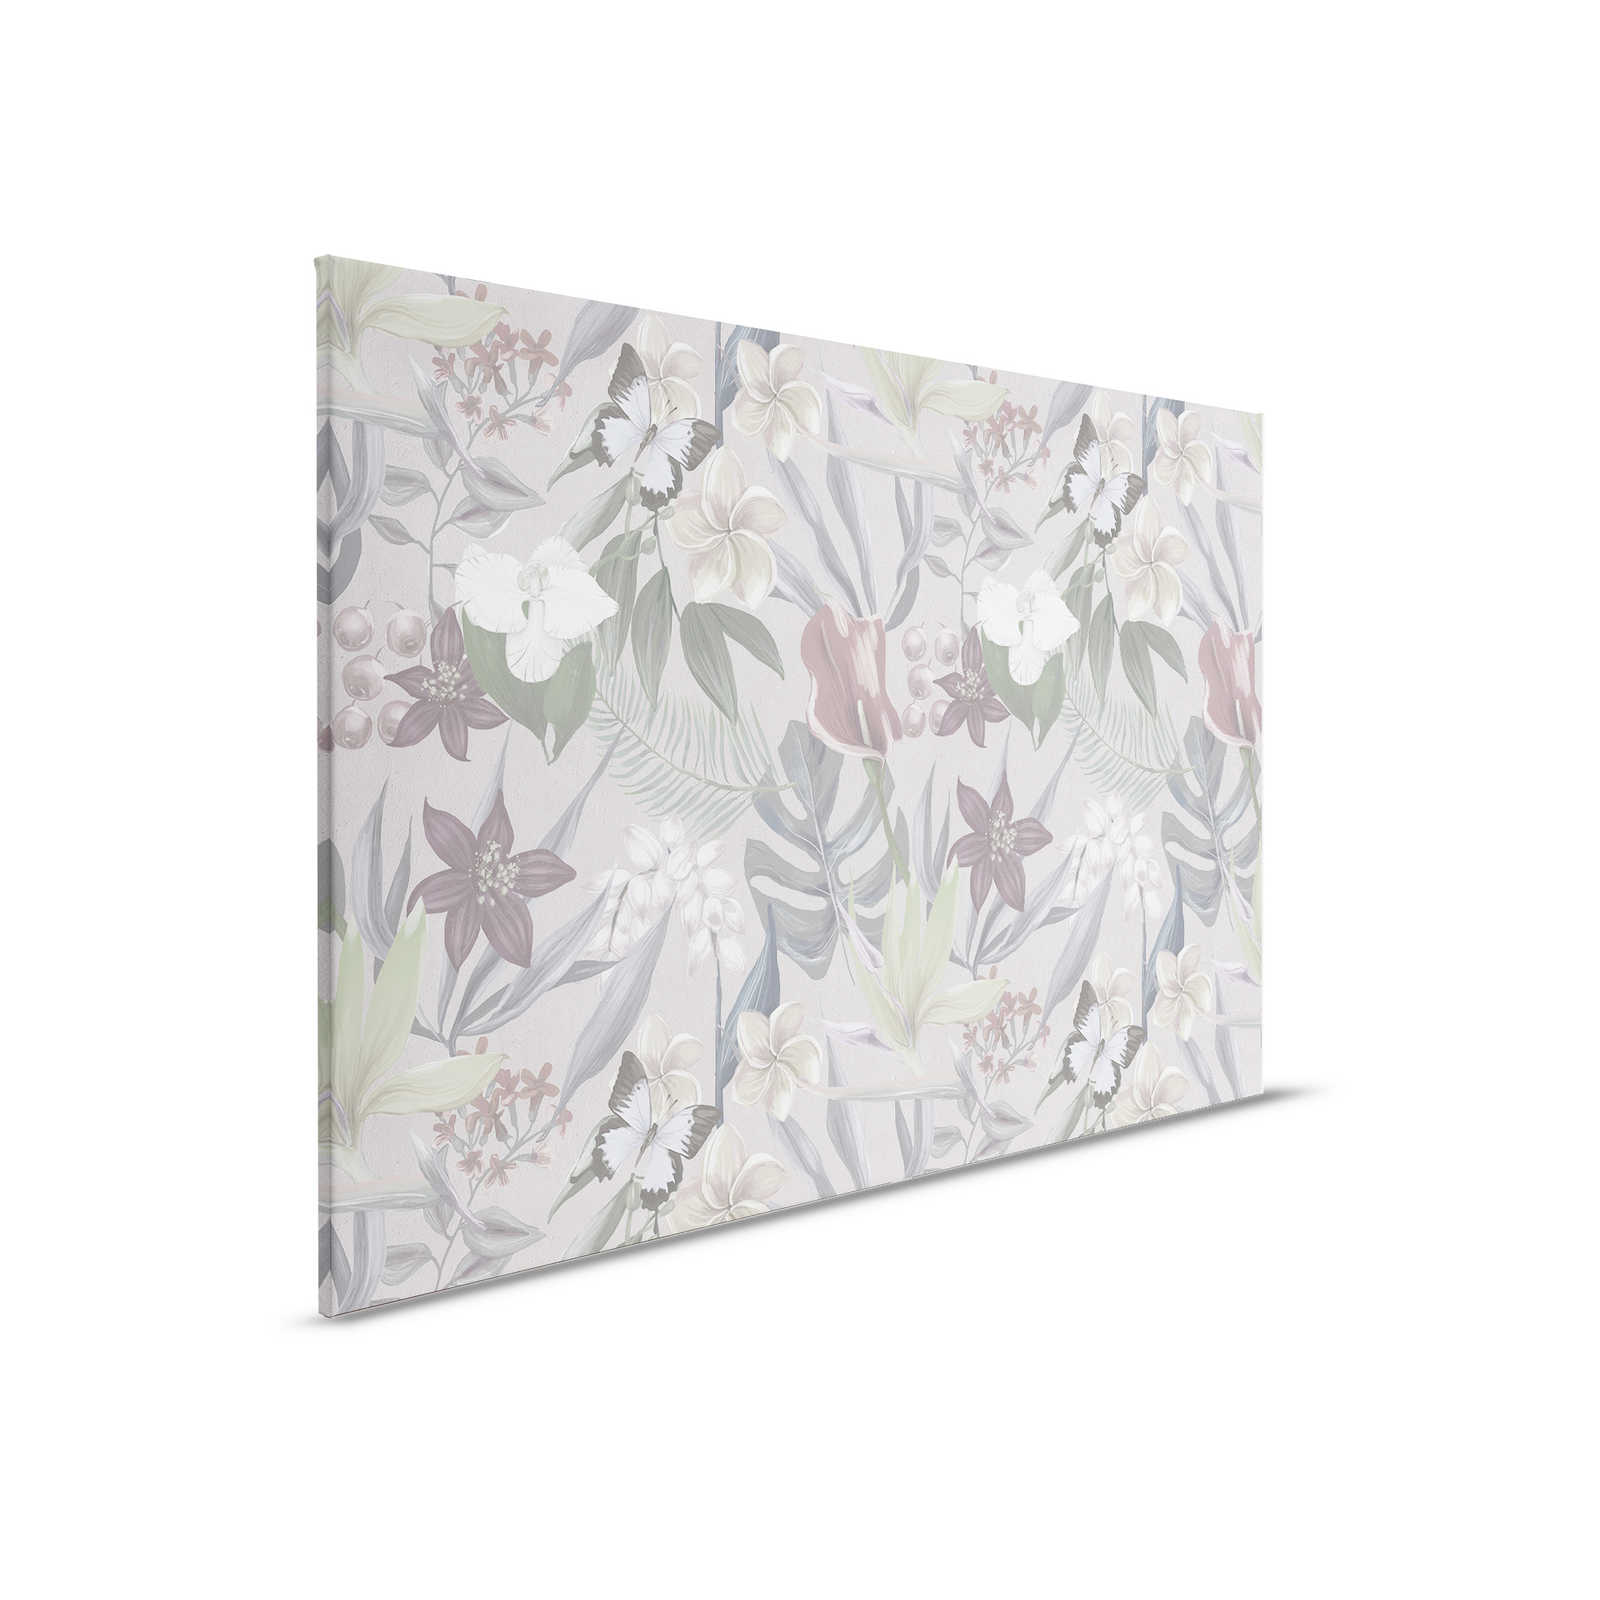         Florales Dschungel Leinwandbild gezeichnet | grau, weiß – 0,90 m x 0,60 m
    